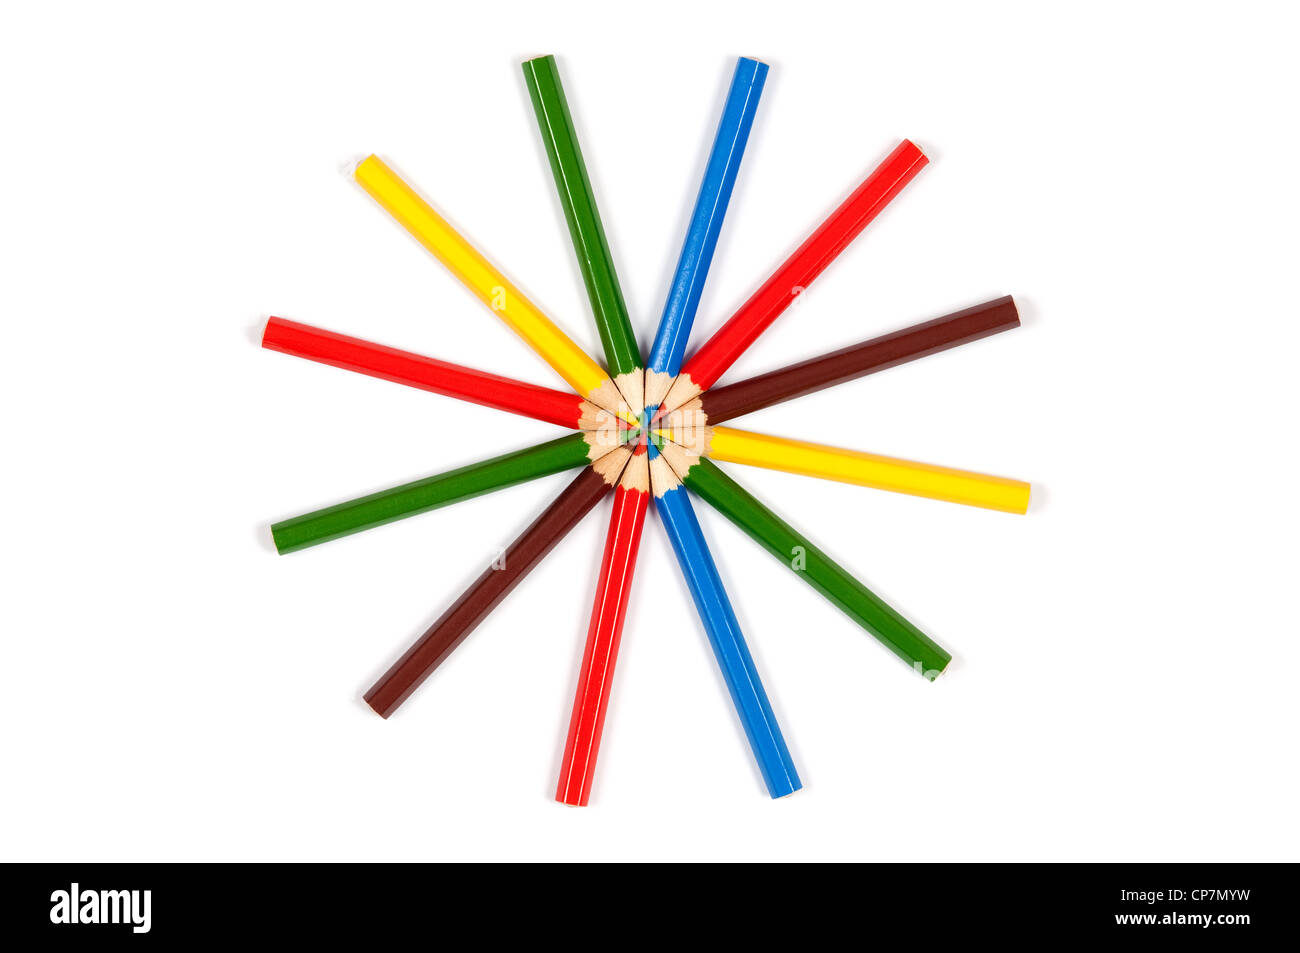 Beaucoup de crayons de couleur disposées en cercle sur fond blanc Banque D'Images